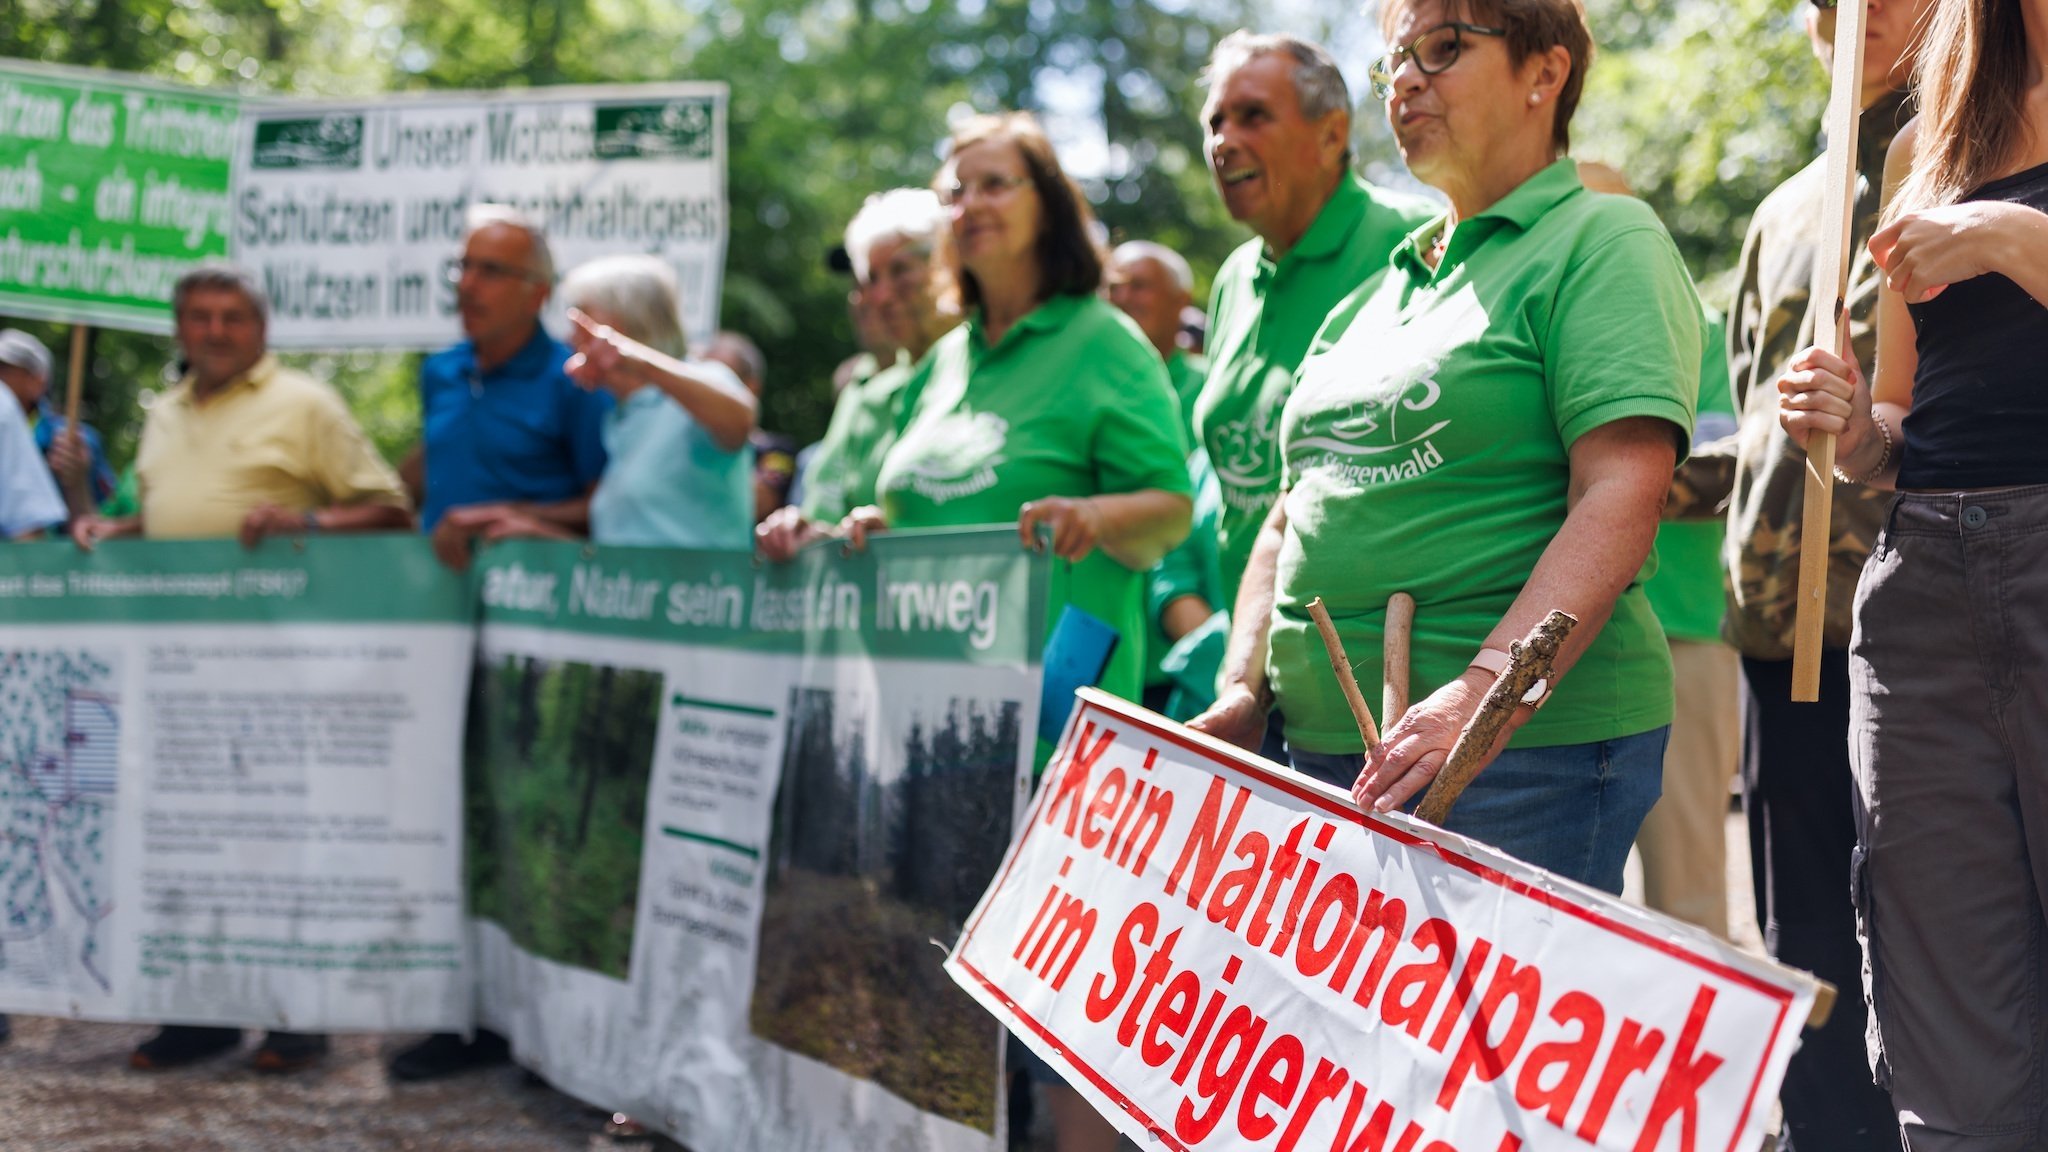 "Kein Nationalpark im Steigerwald" steht auf einem Schild von Gegnern des Nationalparks am Rande des Besuchs der Bundesministerin.